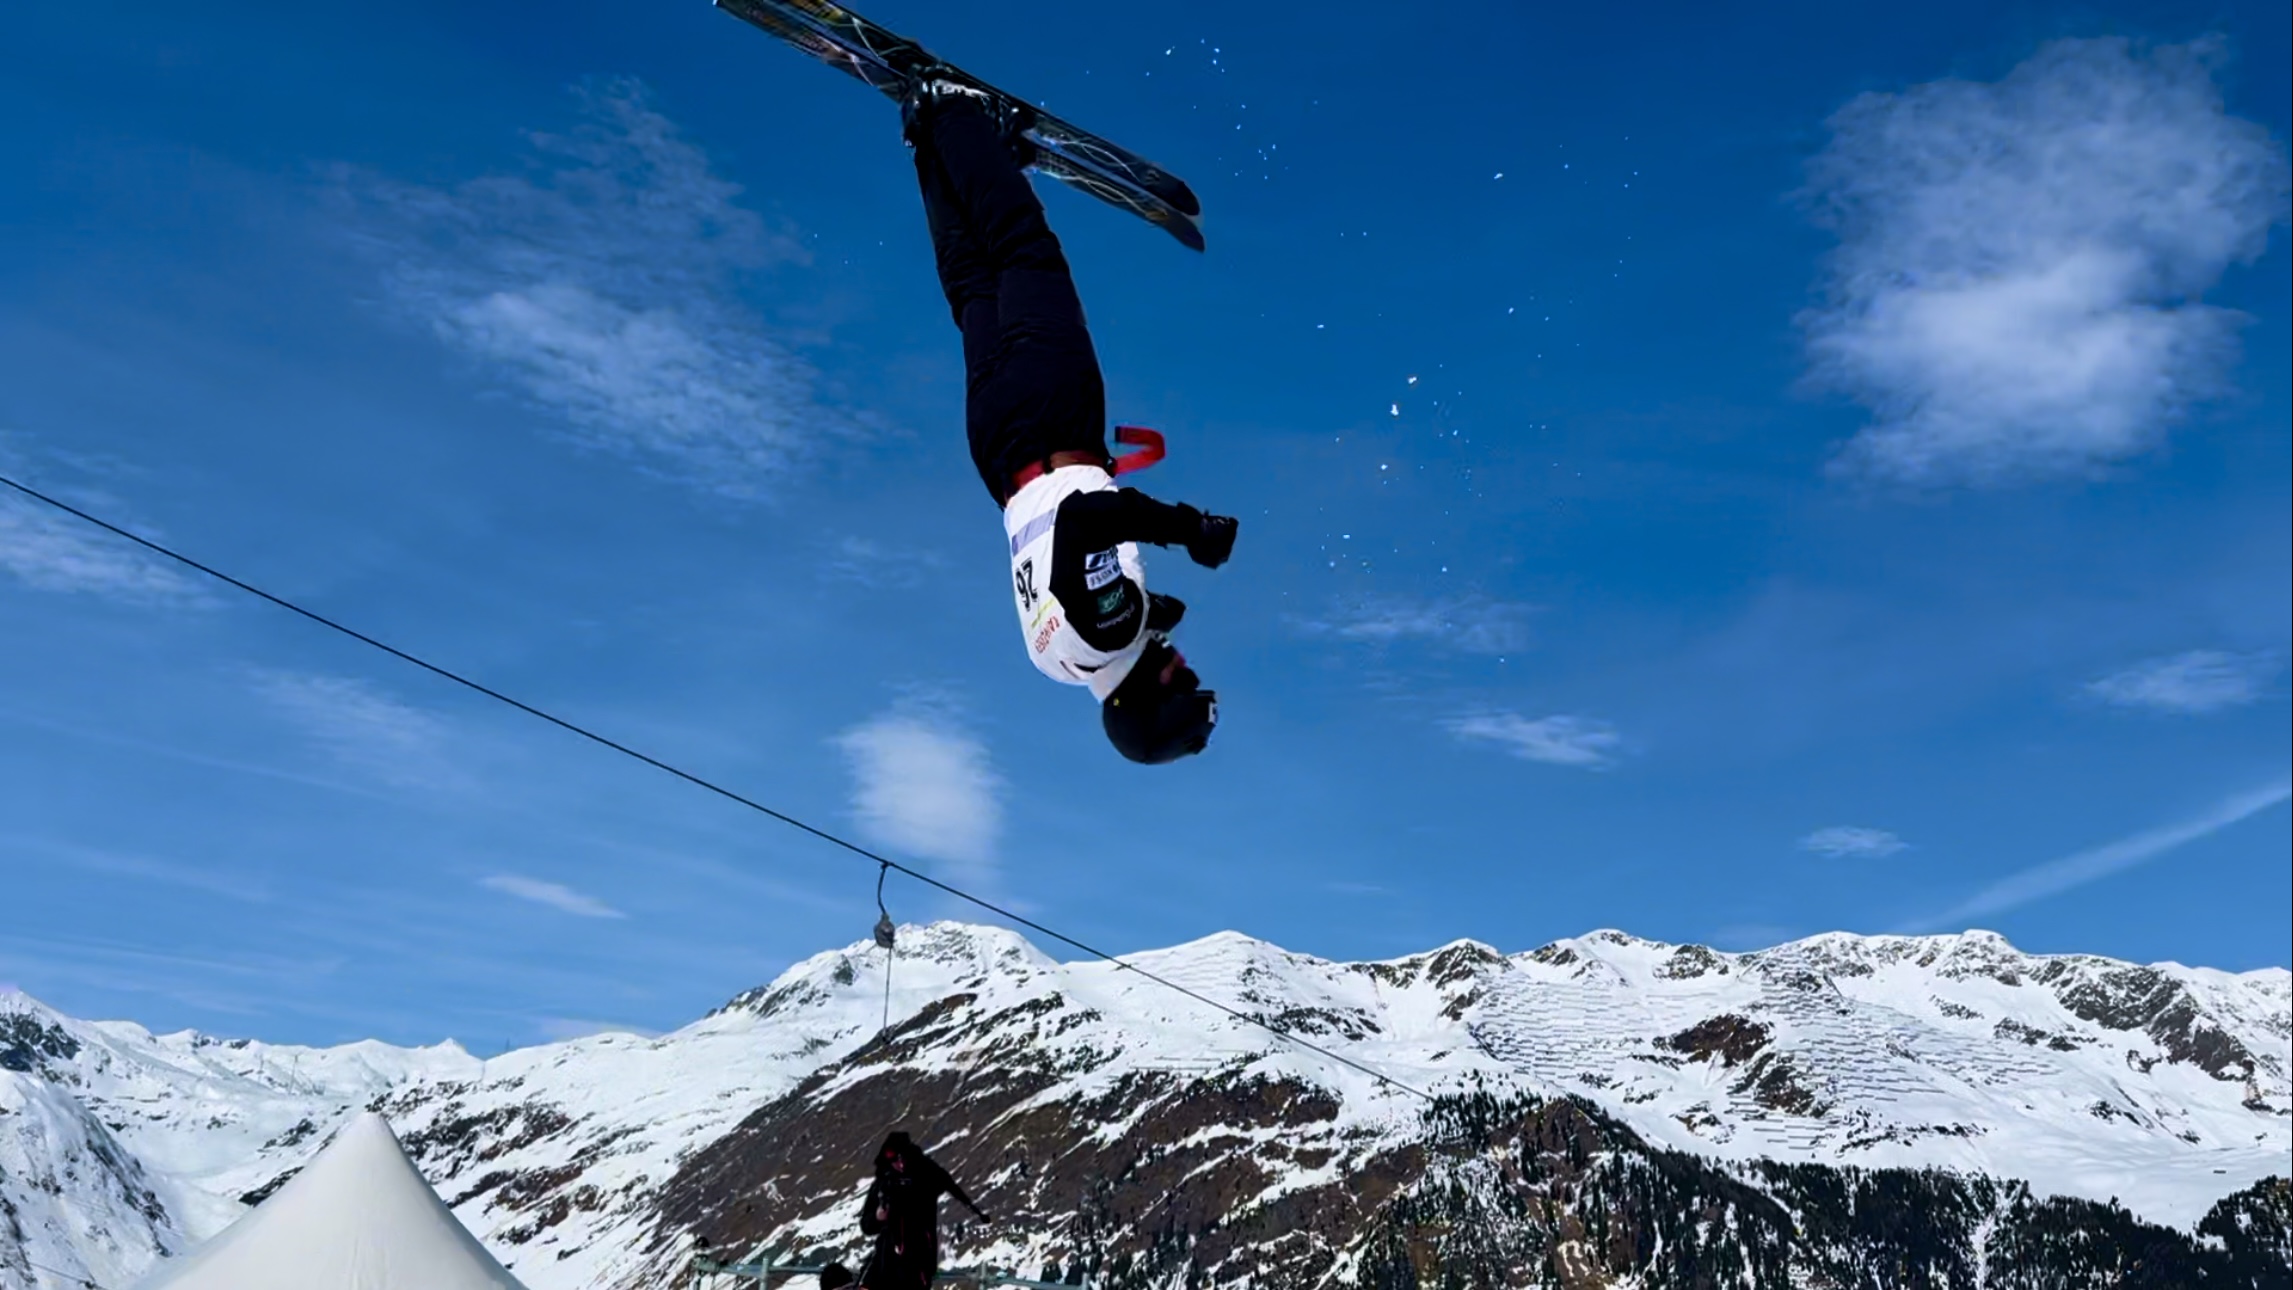 【スキー】隣のジャンプ台の上から、飛んでいる選手を間近で撮影した映像には迫力がありますね。